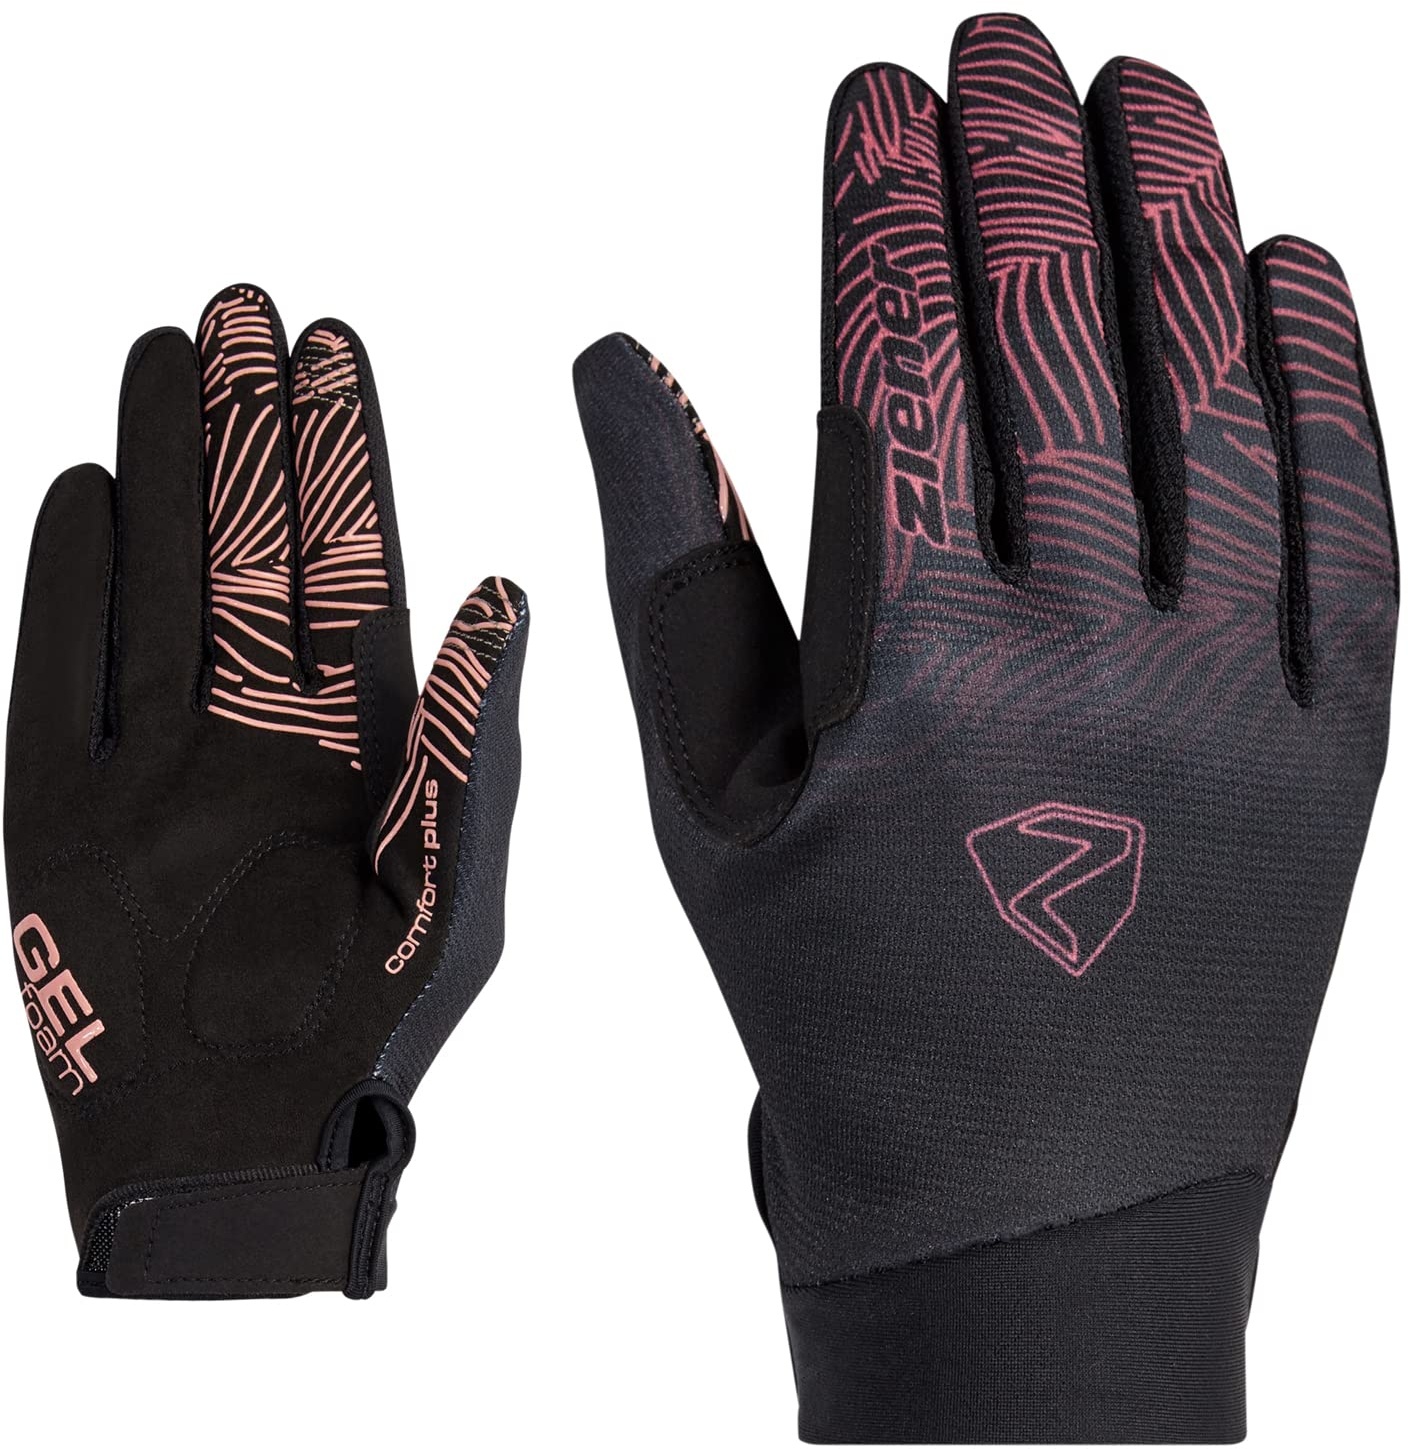 Ziener Damen Conny Fahrrad/Mountainbike/Radsport-Handschuhe | Langfinger mit Touchfunktion - atmungsaktiv,dämpfend, pink dust, 6